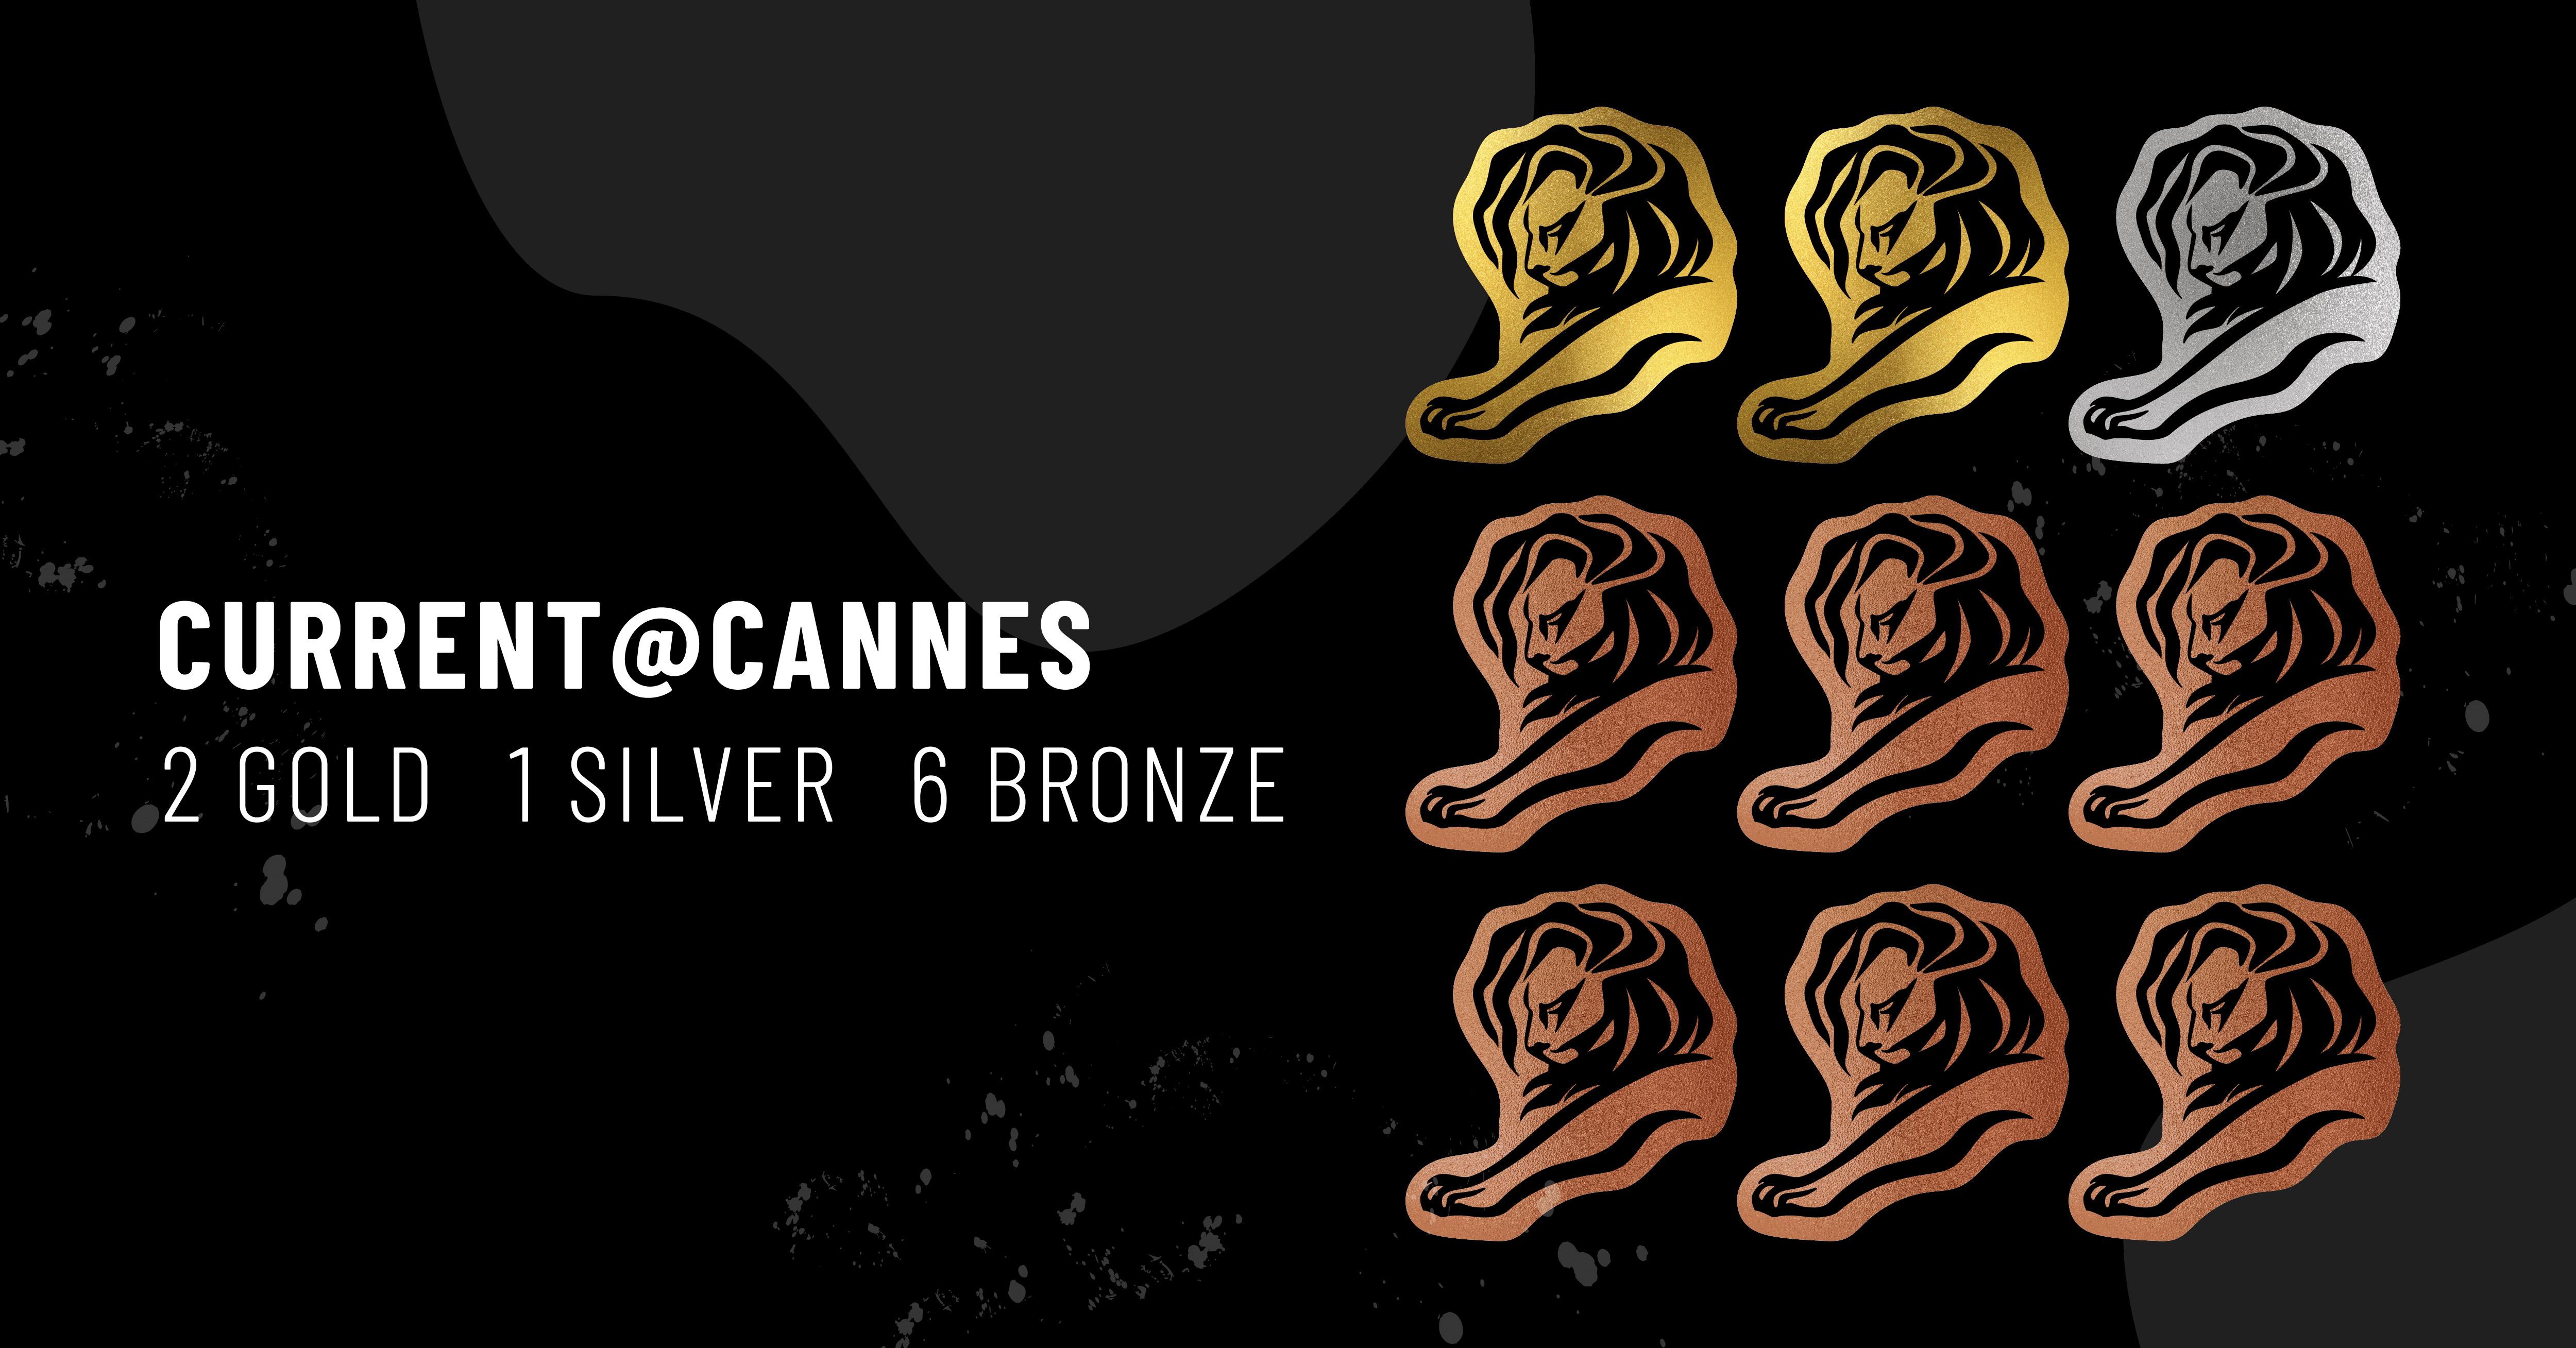 L'image présente l'icône des 9 Lions de Cannes avec le texte suivant : Current @ Cannes - 2 Gold, 1 Silver, 6 Bronze.